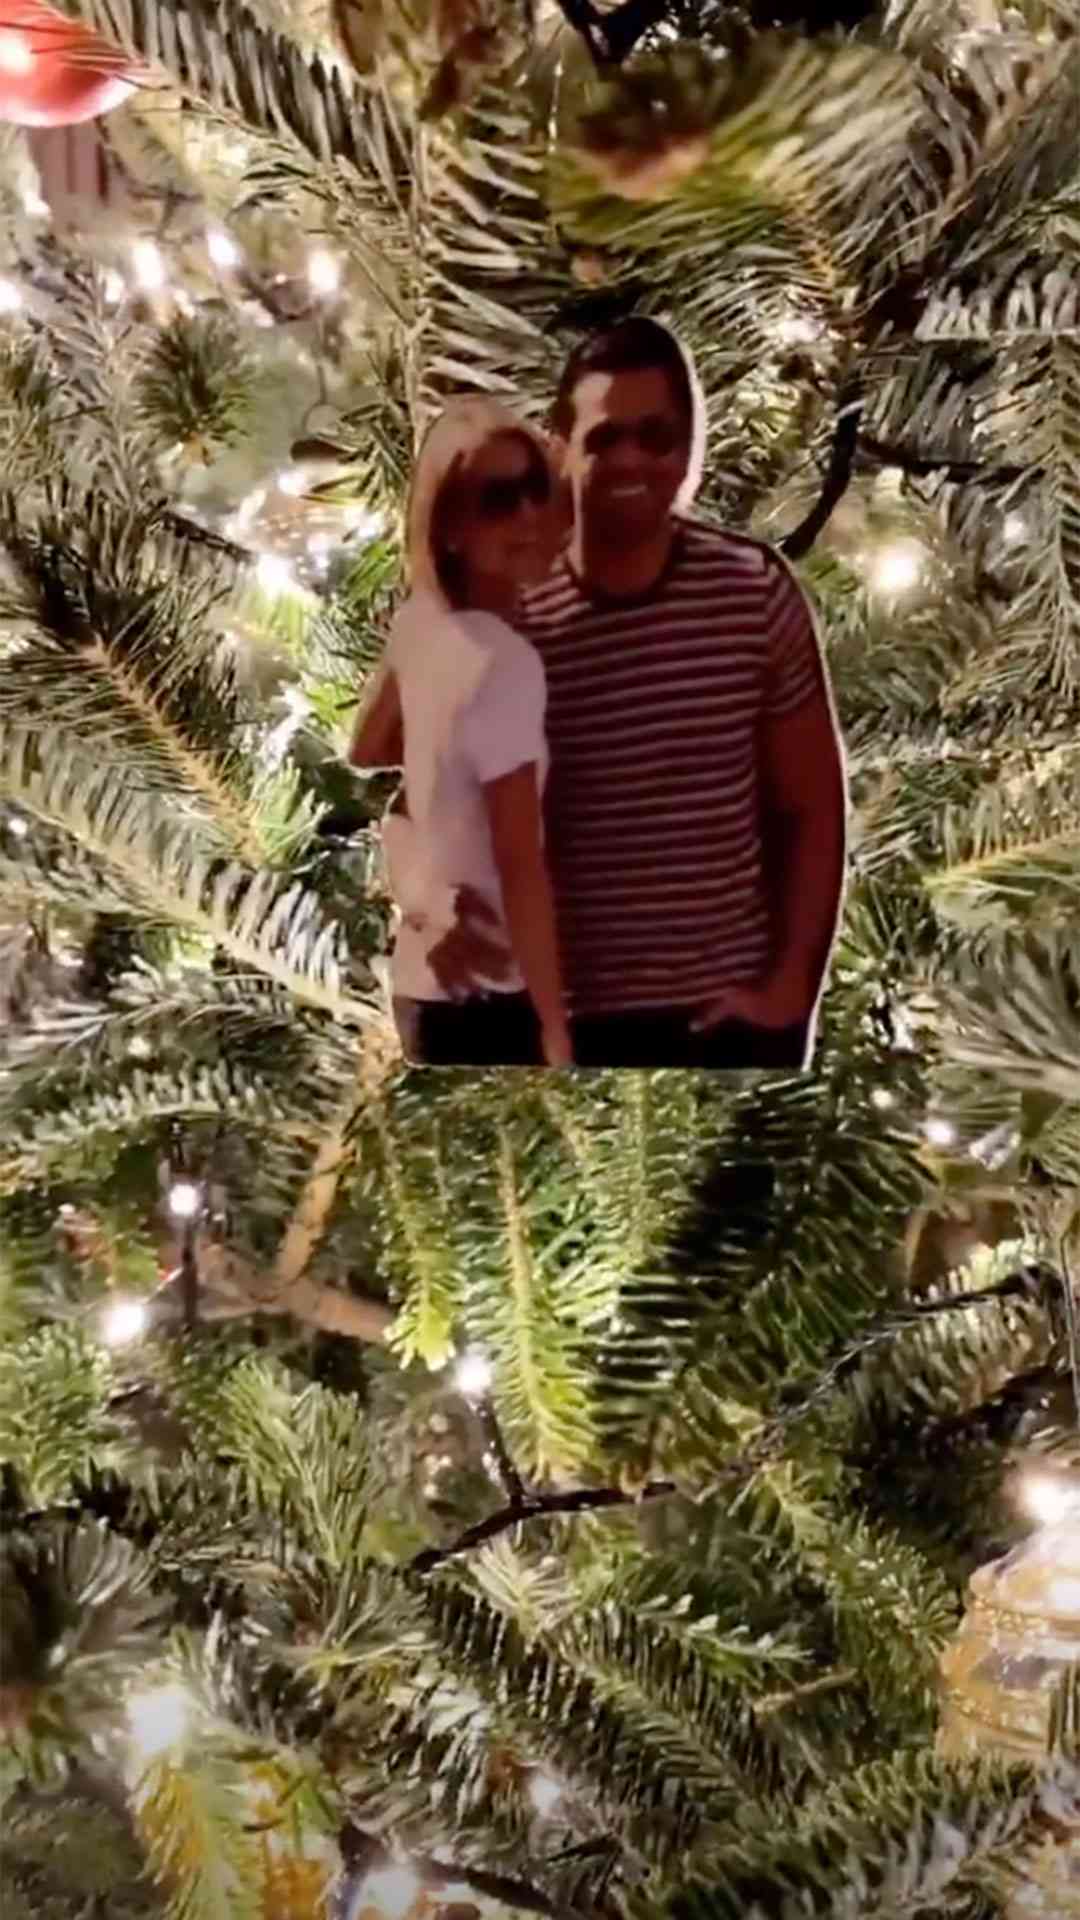 Kelly Ripa Christmas Tree Family Ornaments